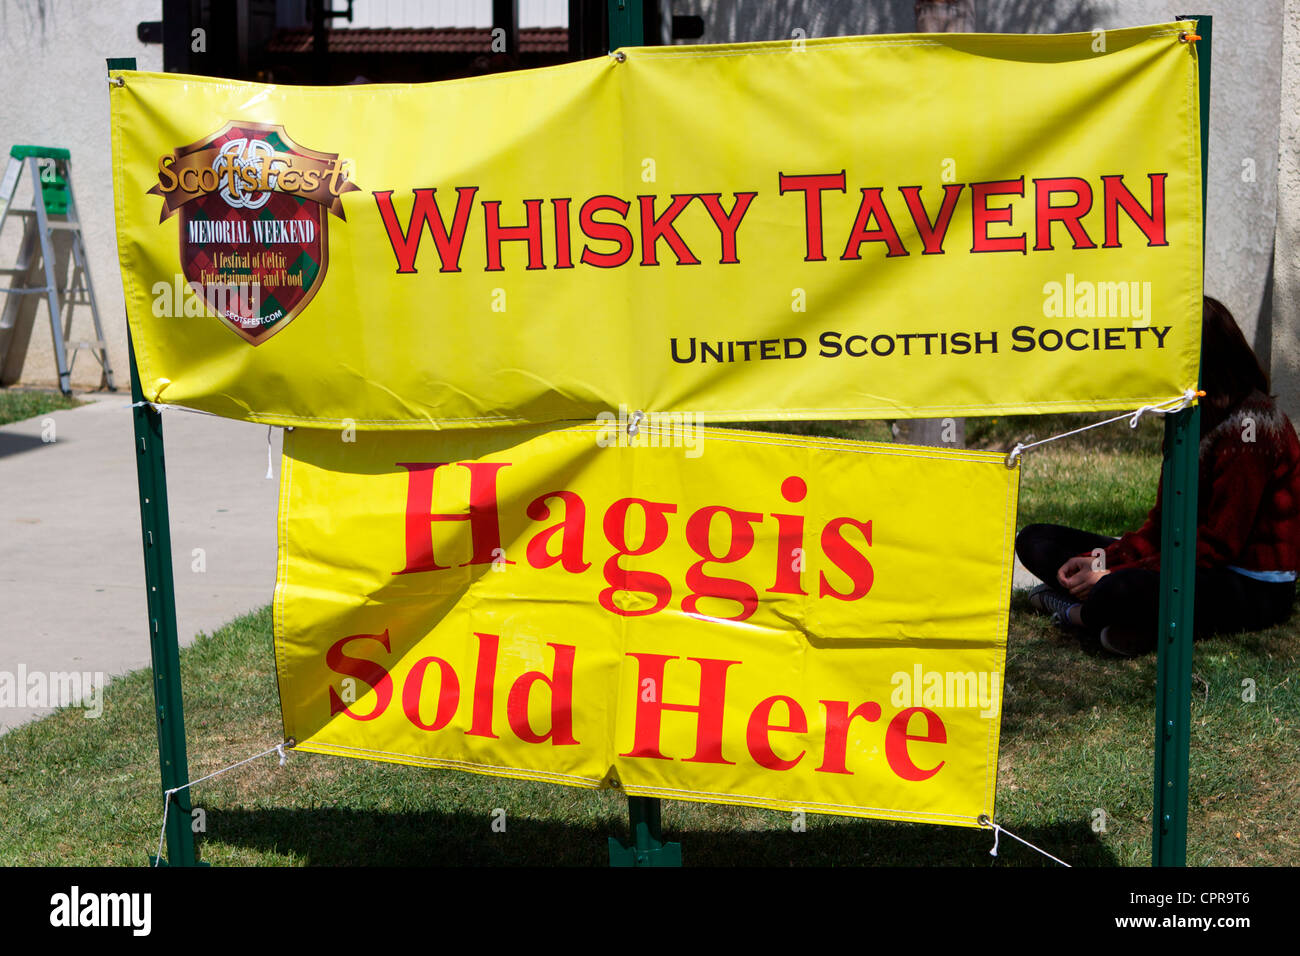 Un signe pour le Whisky w tavern et haggis écossais lors d'un festival à Orange County Fairgrounds Costa Mesa, Californie. Banque D'Images